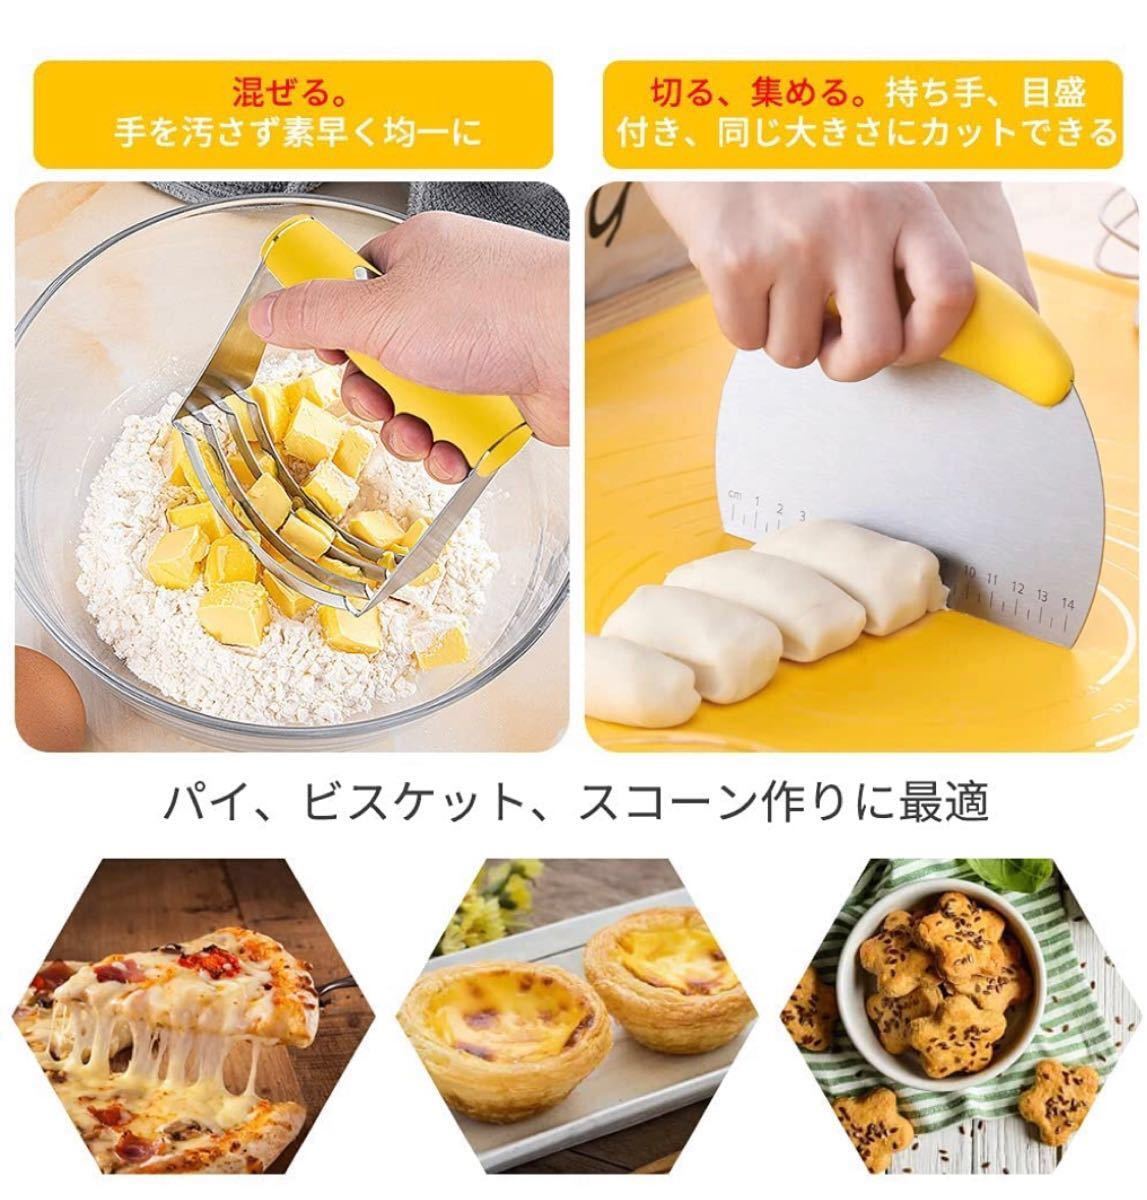 キッチンツール セット スクレーパー スパチュラ ピザカッター ブレンダー シリコンマット 麺棒 スケッパー　パン作り